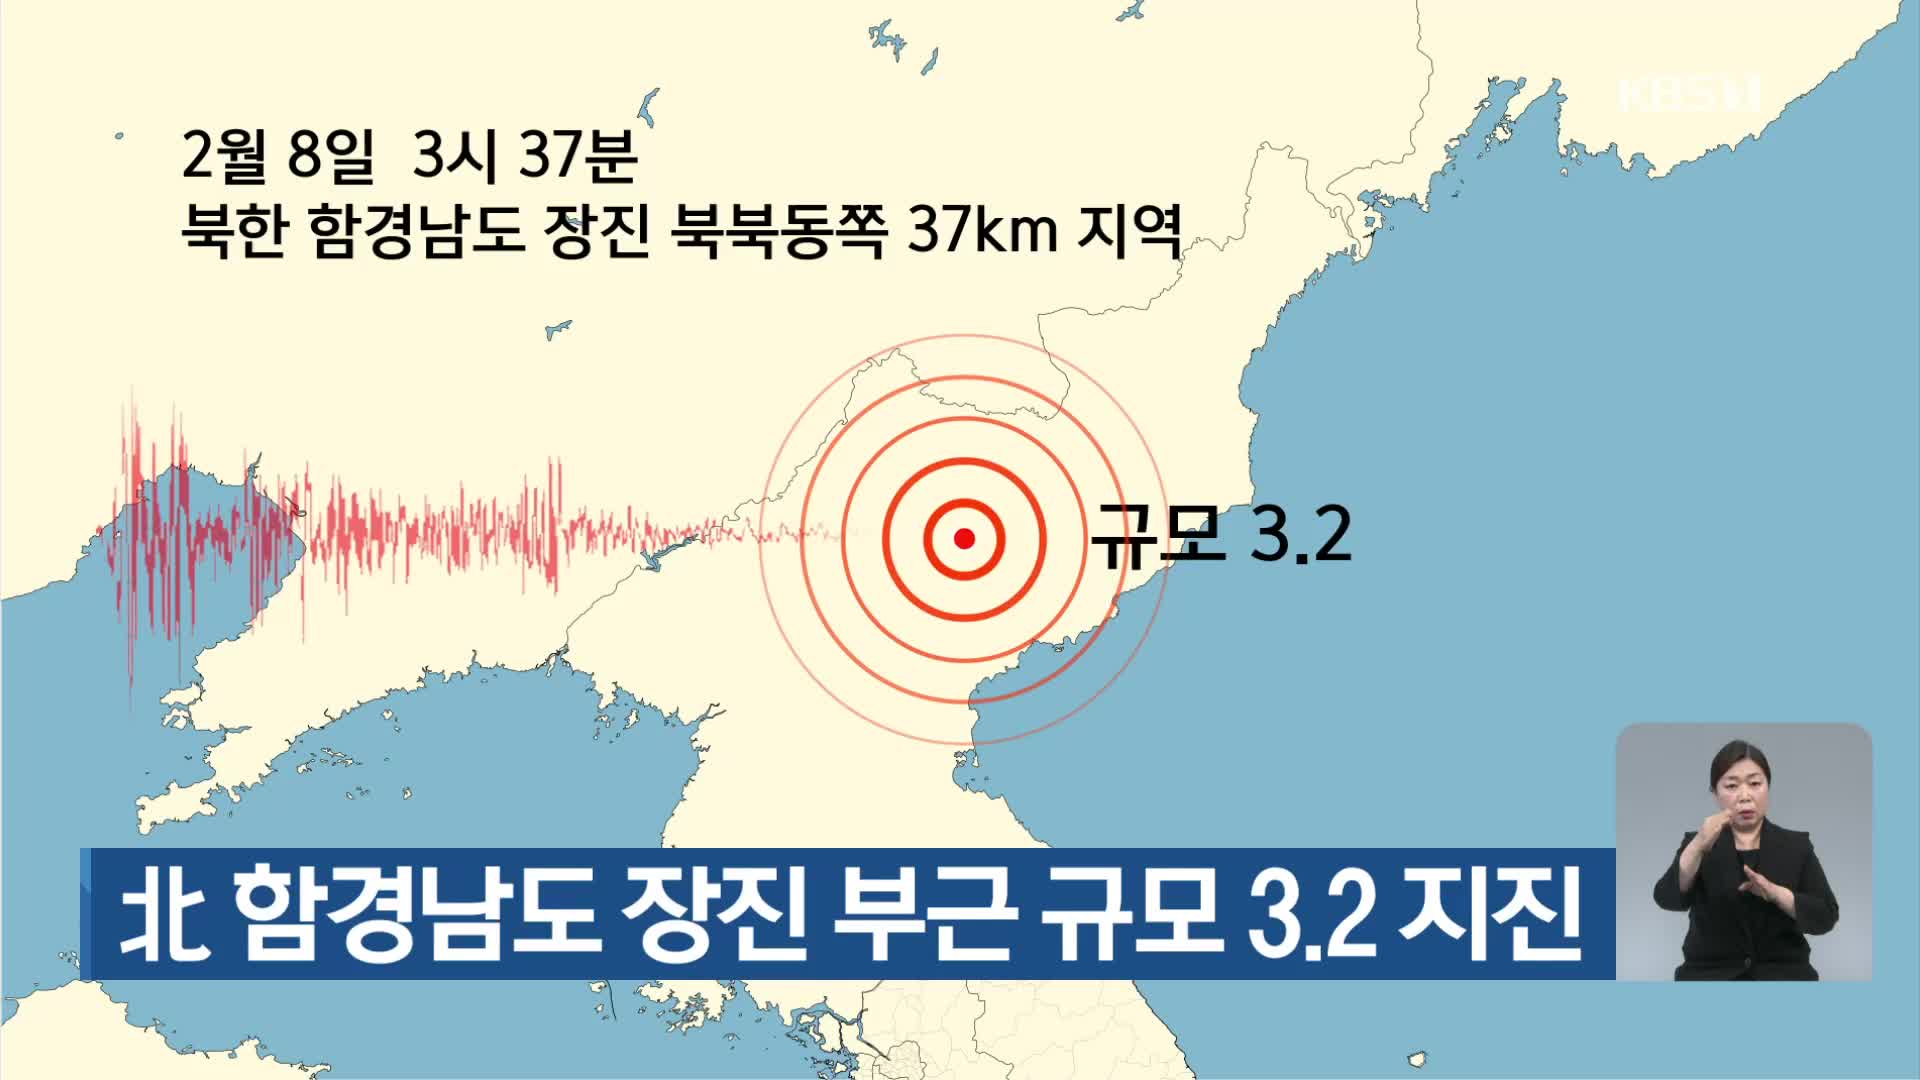 北 함경남도 장진 부근 규모 3.2 지진